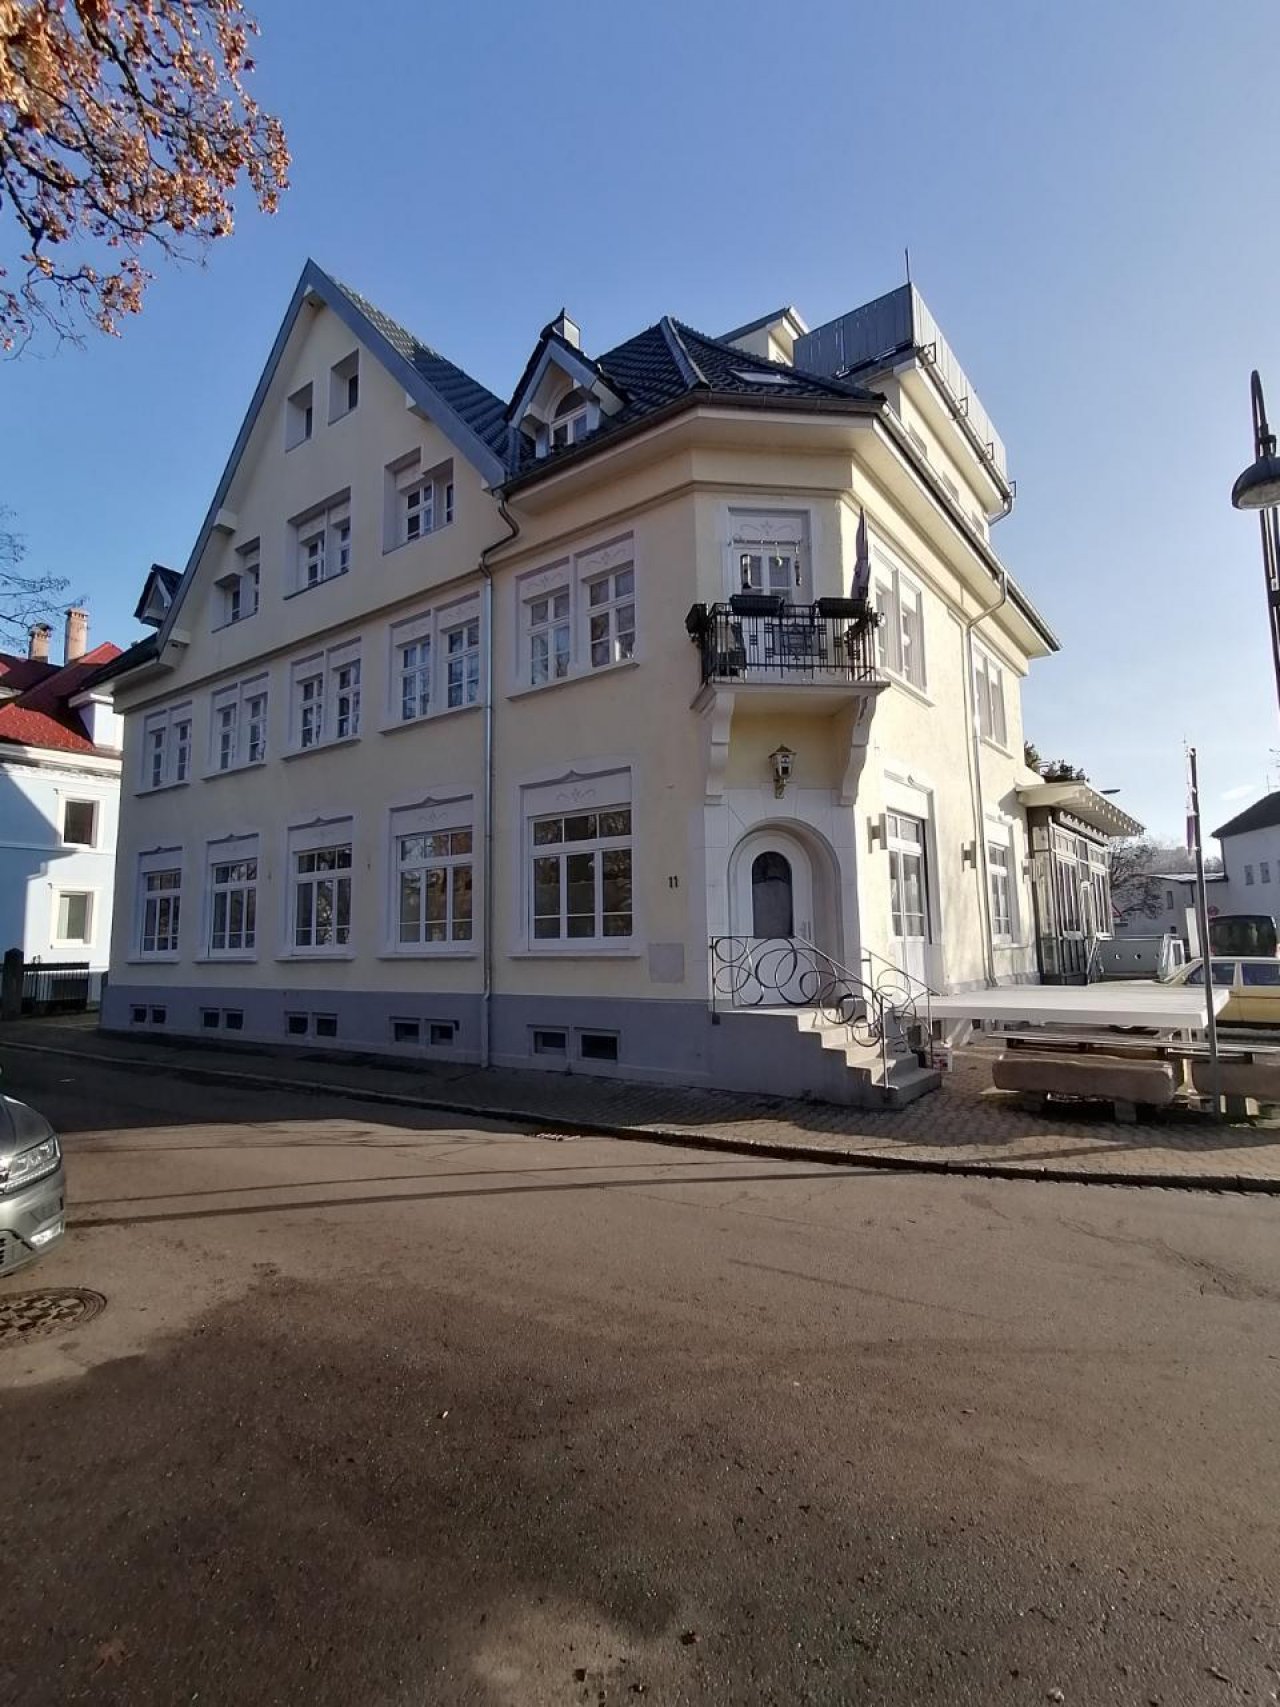 Gasthaus in Landauf, LandApp BW App spotted by Harry Schneckenburger on 18.12.2020